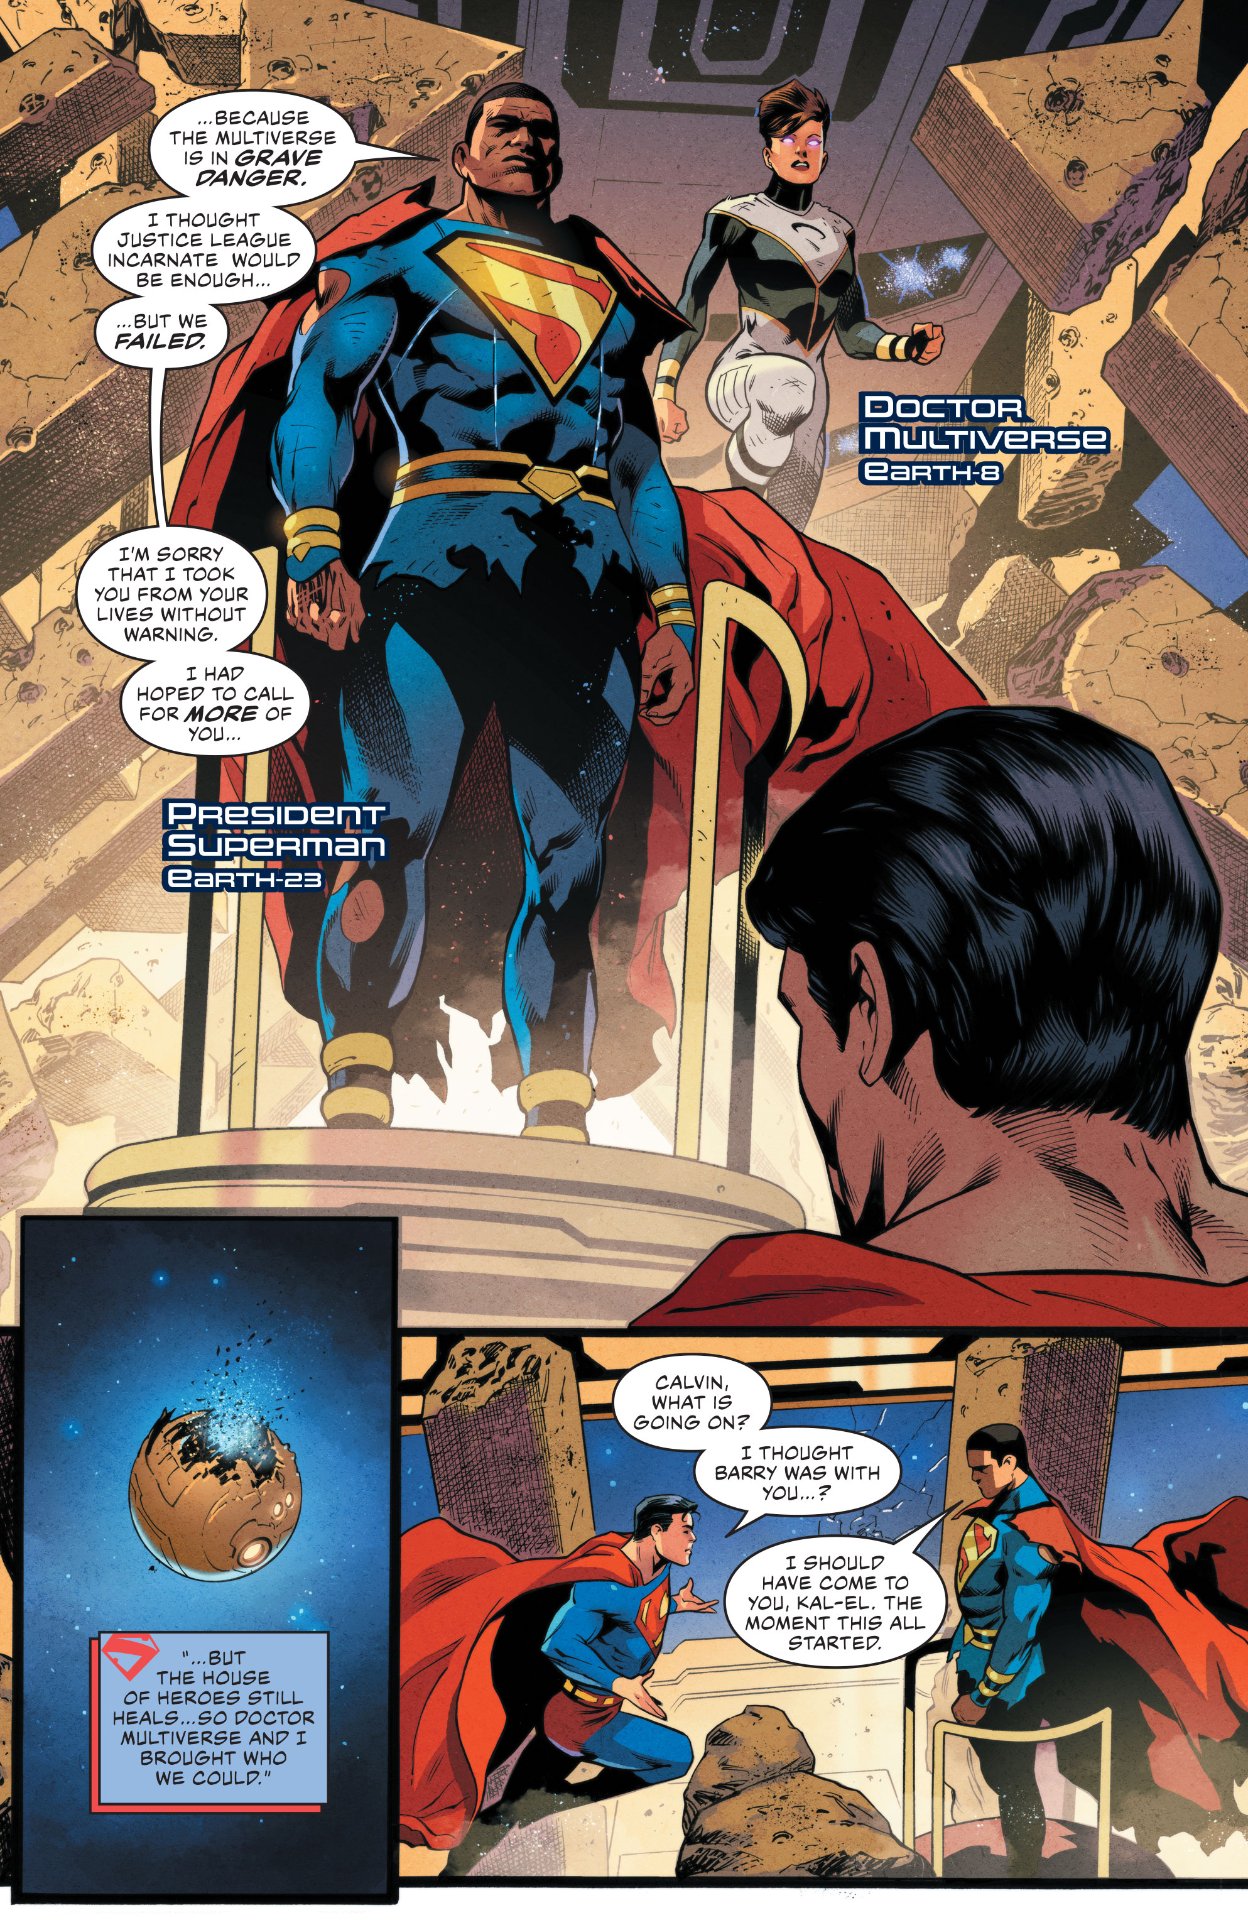 Justice League #75 preview